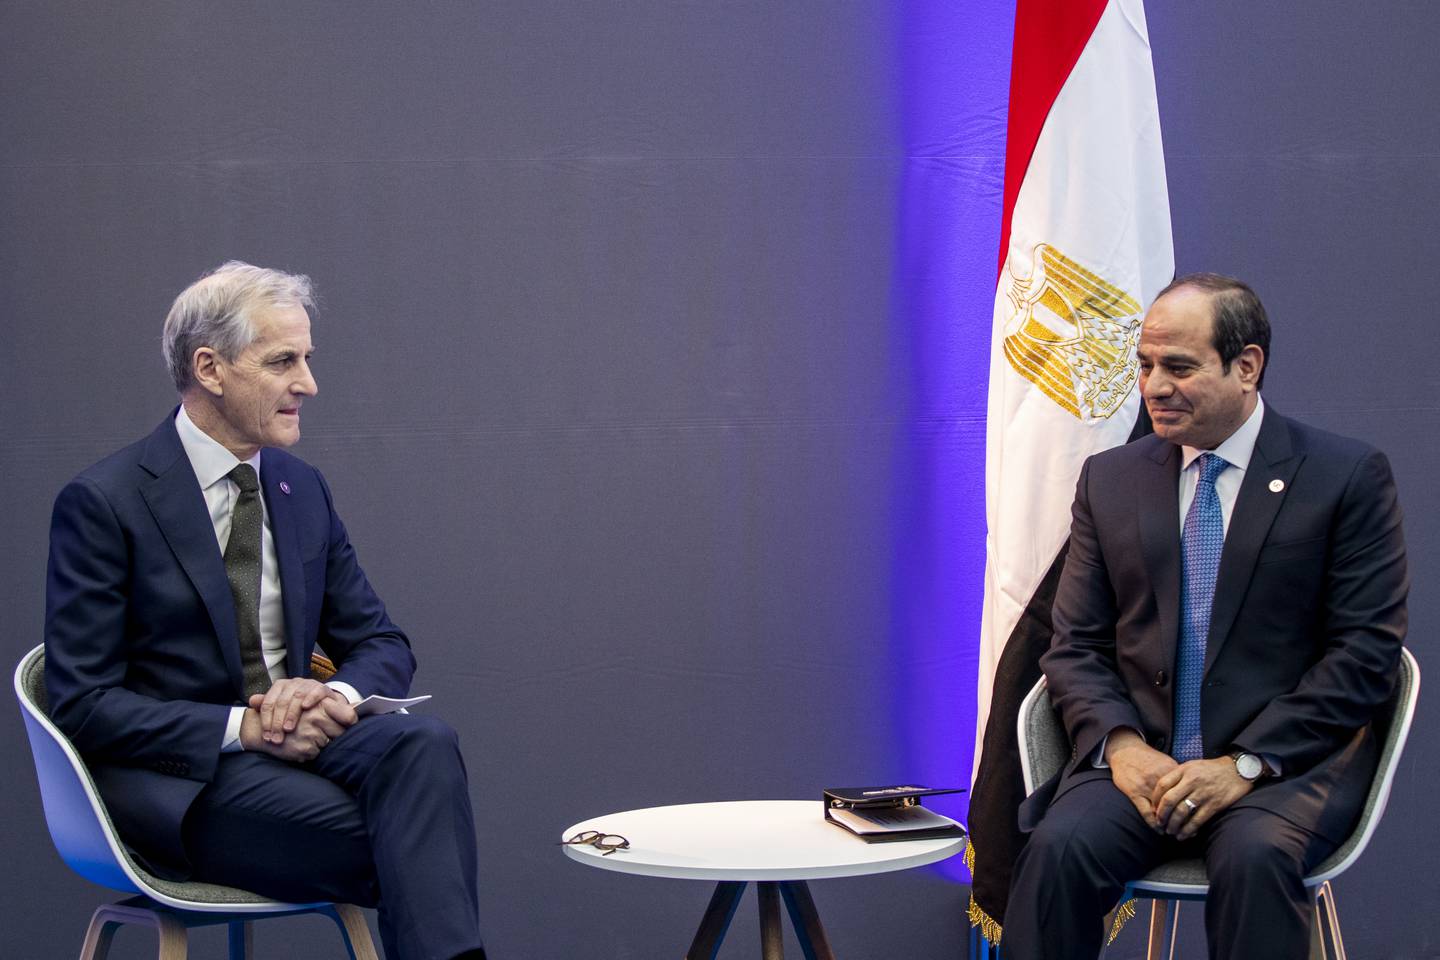 Statsminister Jonas Gahr Støre (Ap) møtte Egypts president, kuppgeneralen Abdul Fattah al-Sisi, under One Ocean Summit-konferansen i Brest i februar i år. Foto: Javad Parsa / NTB